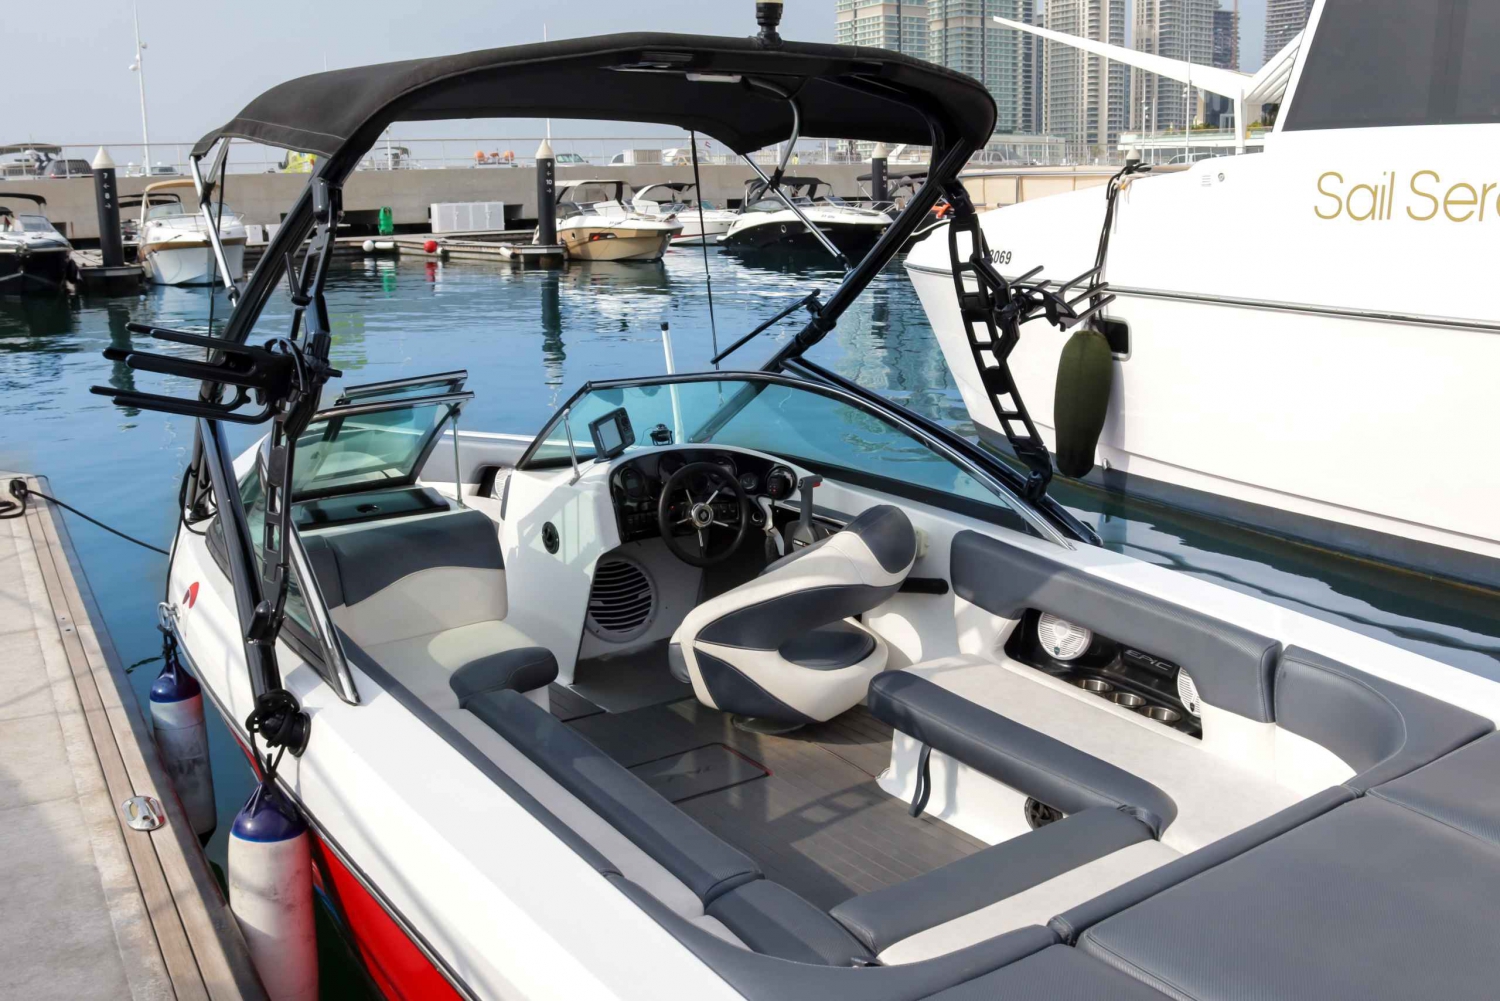 Private Speed Boat Tour in Dubai